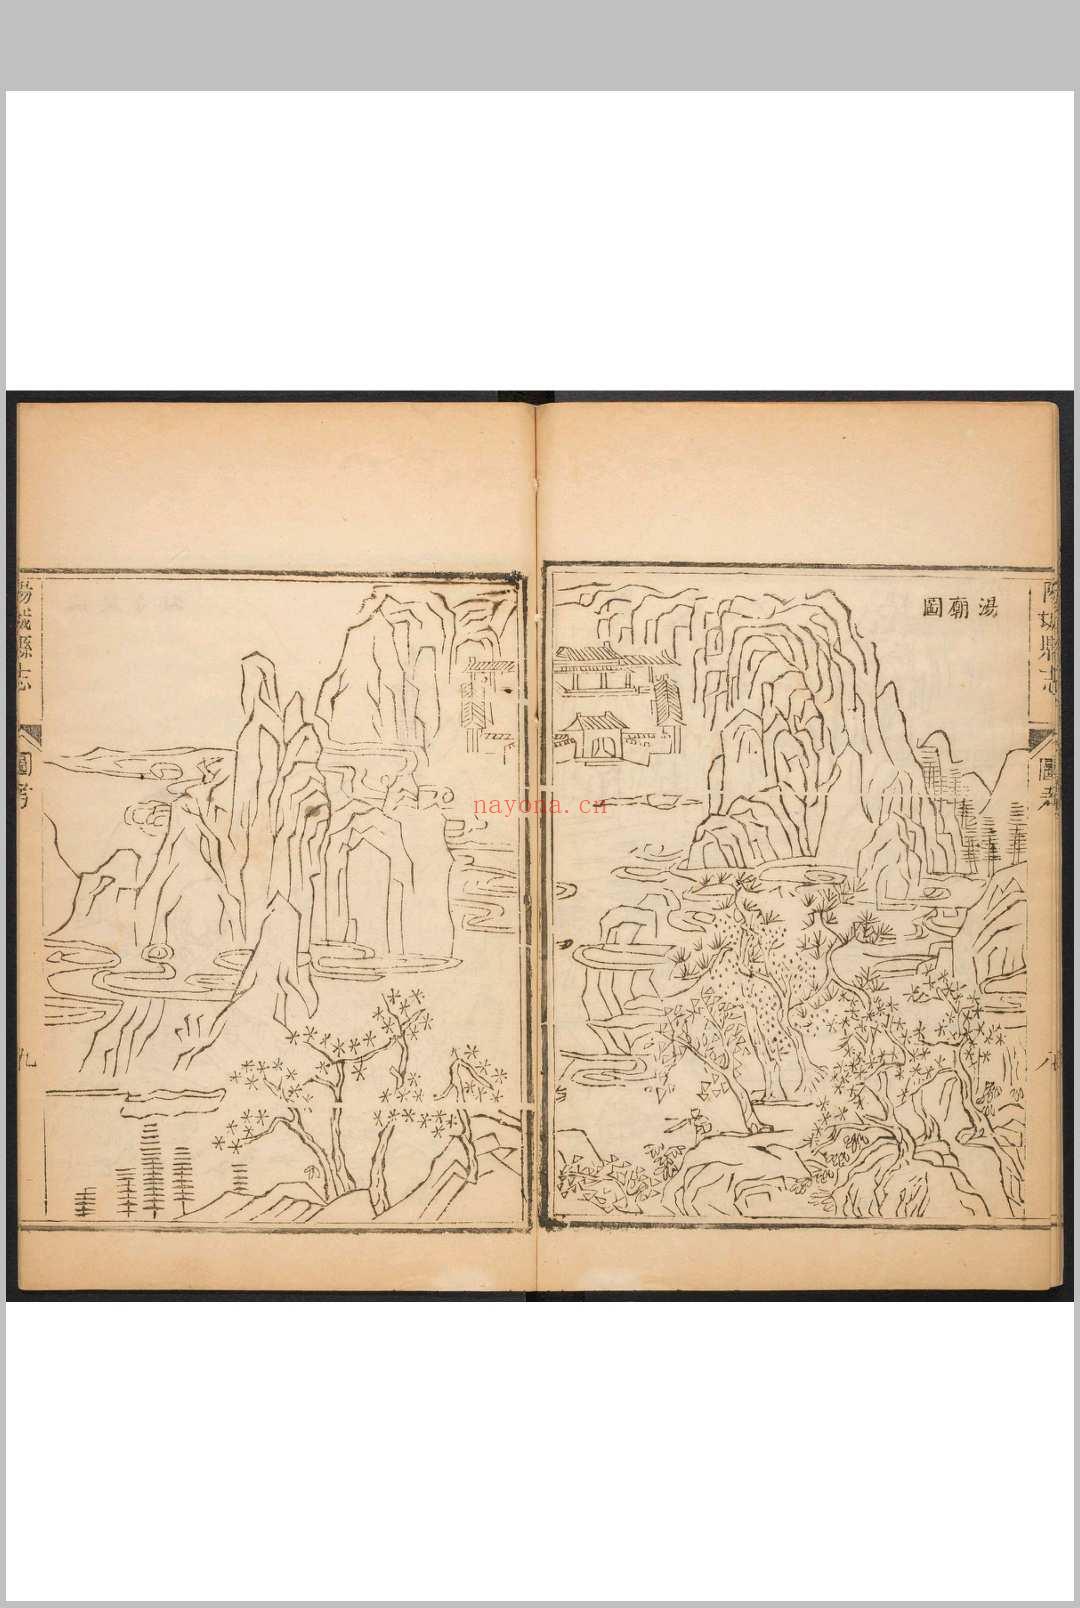 阳城县志  16卷 杨善庆纂修.乾隆20年 [1755]